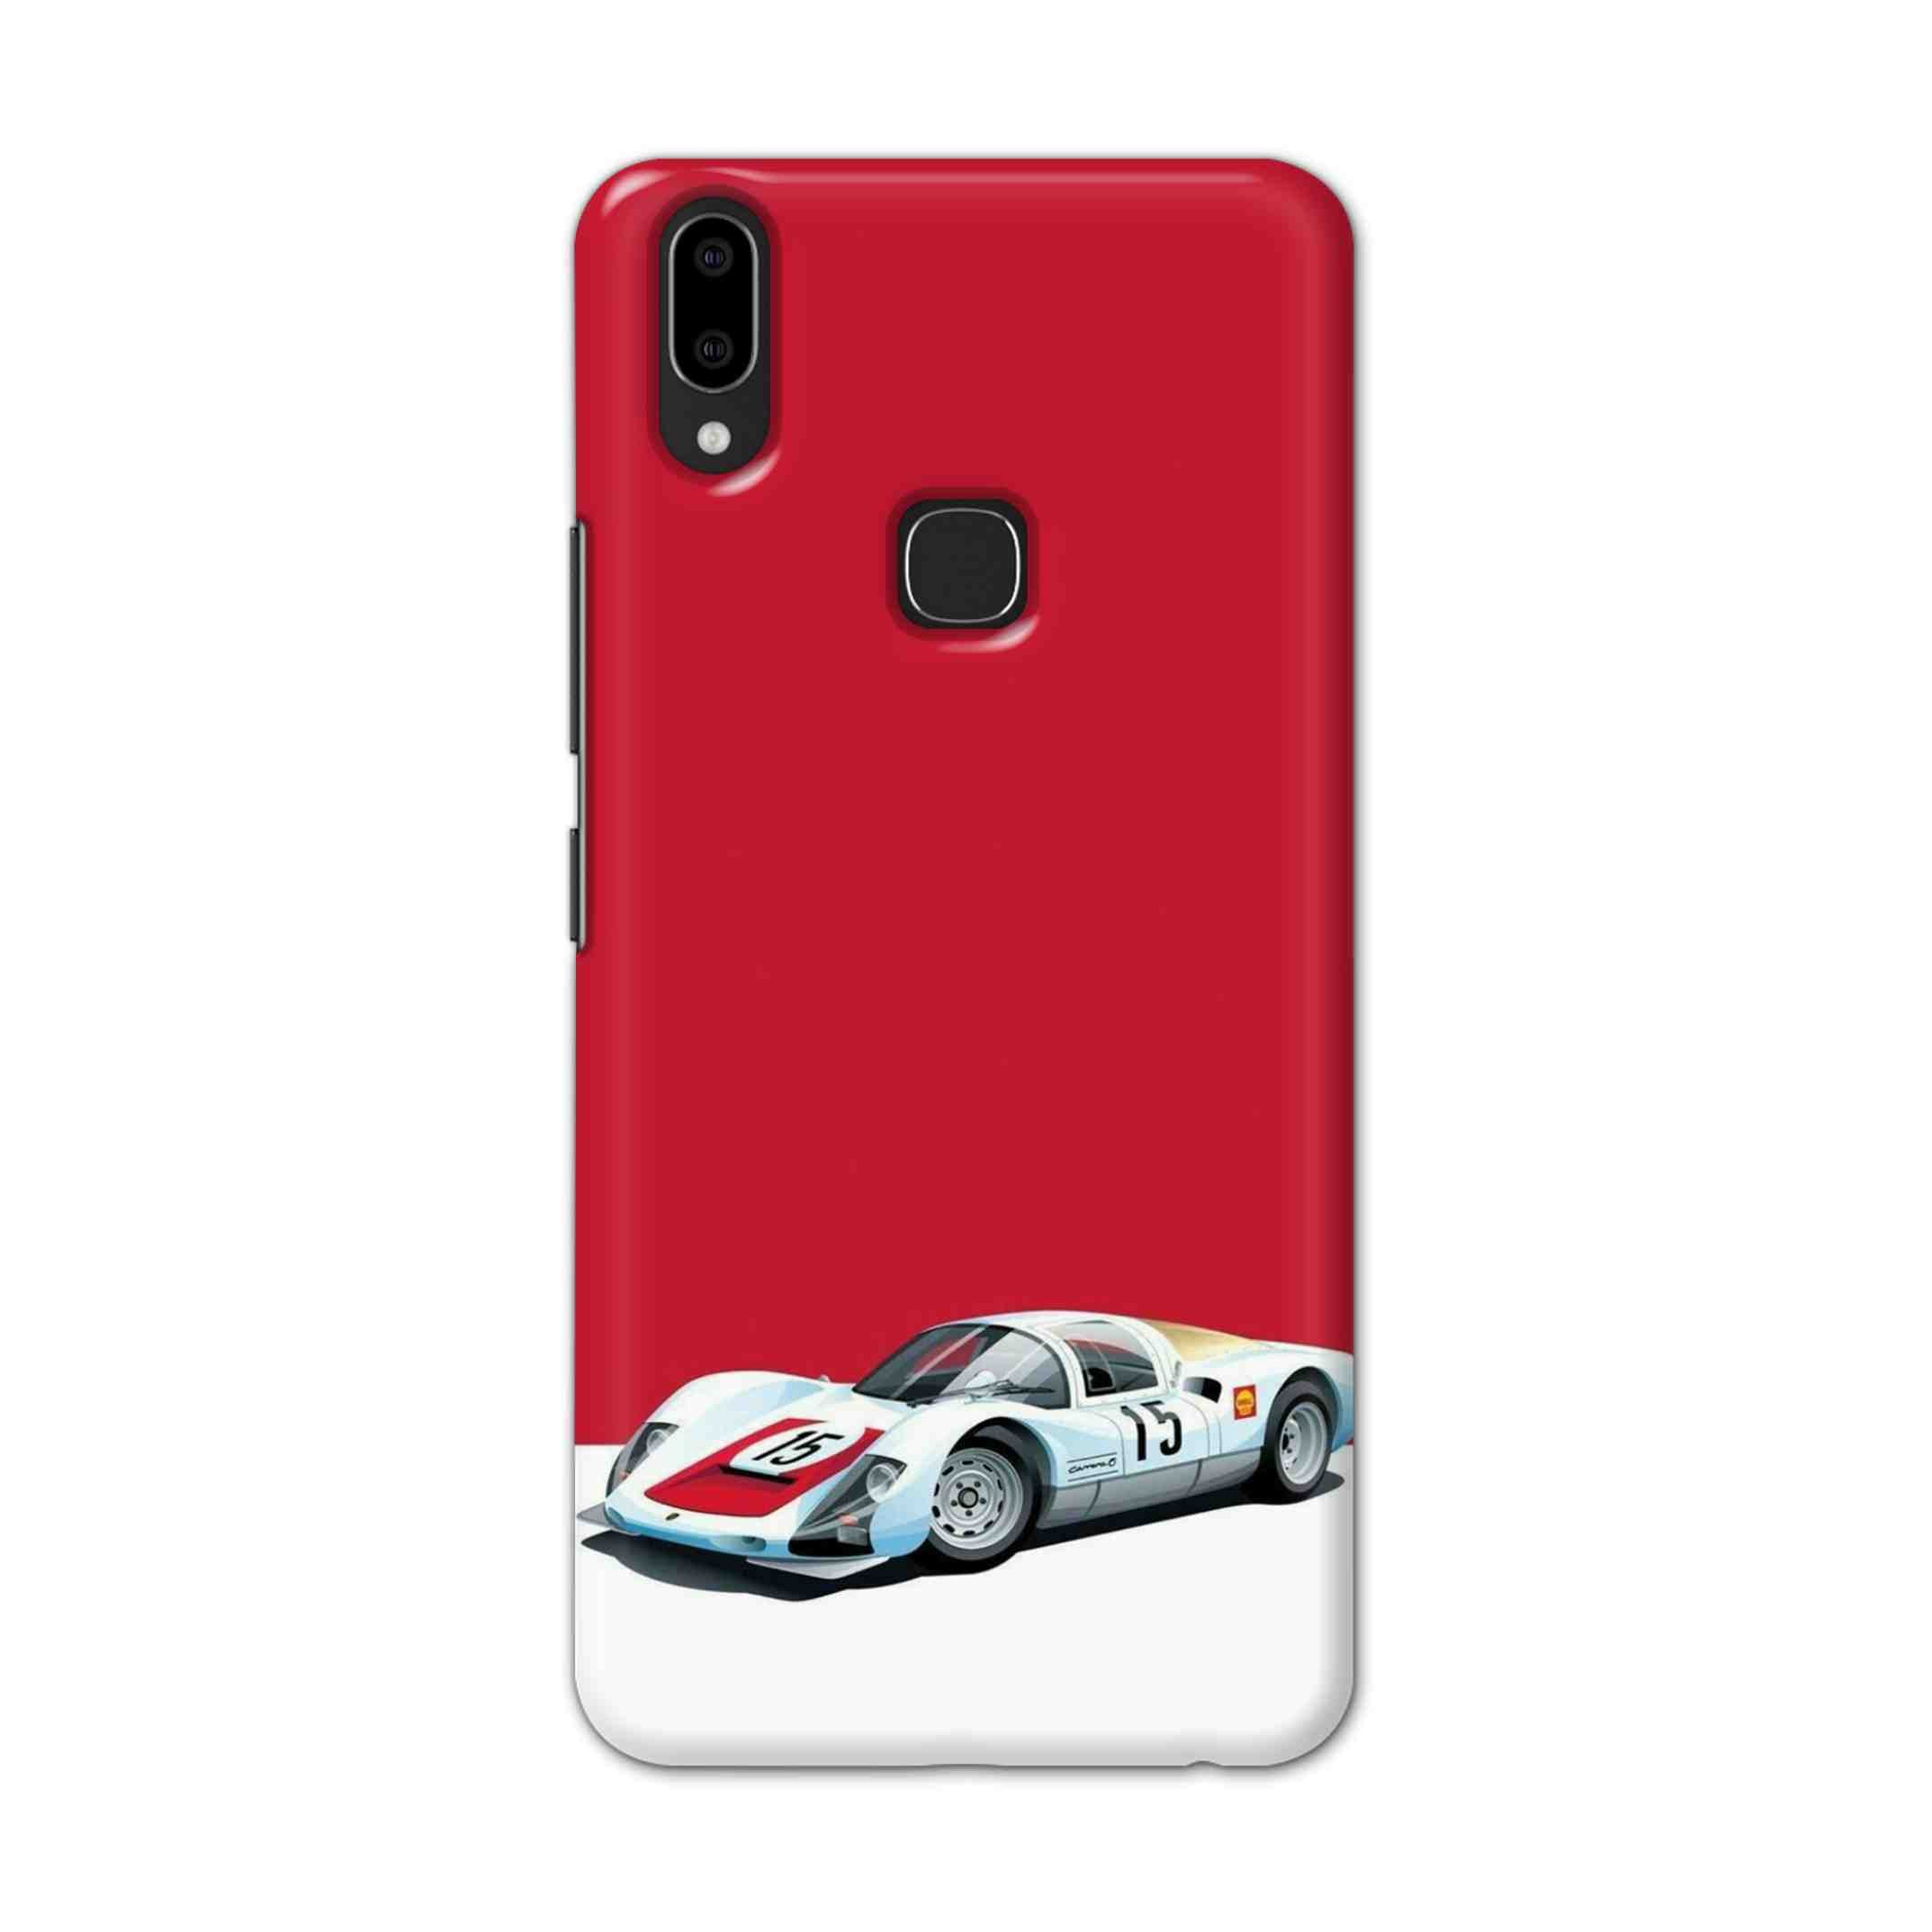 Buy Ferrari F15 Hard Back Mobile Phone Case Cover For Vivo V9 / V9 Youth Online